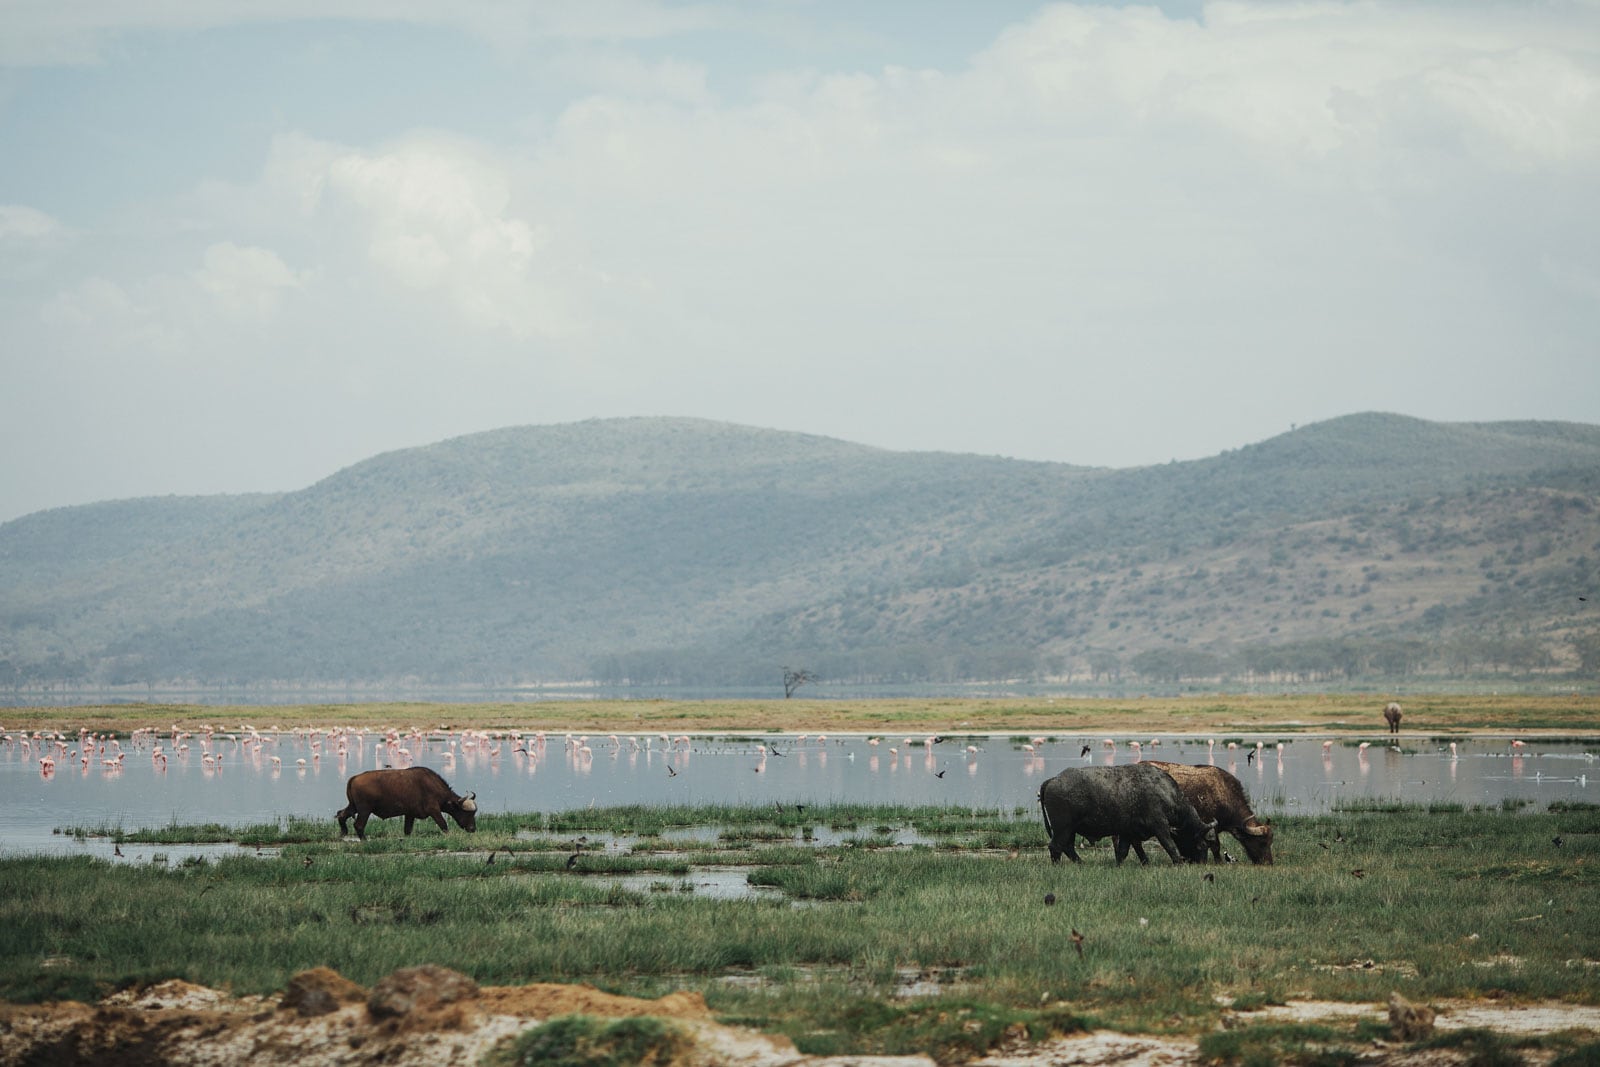 Landscape and animal scenes on safari in Lake Nakuru National Park, Kenya